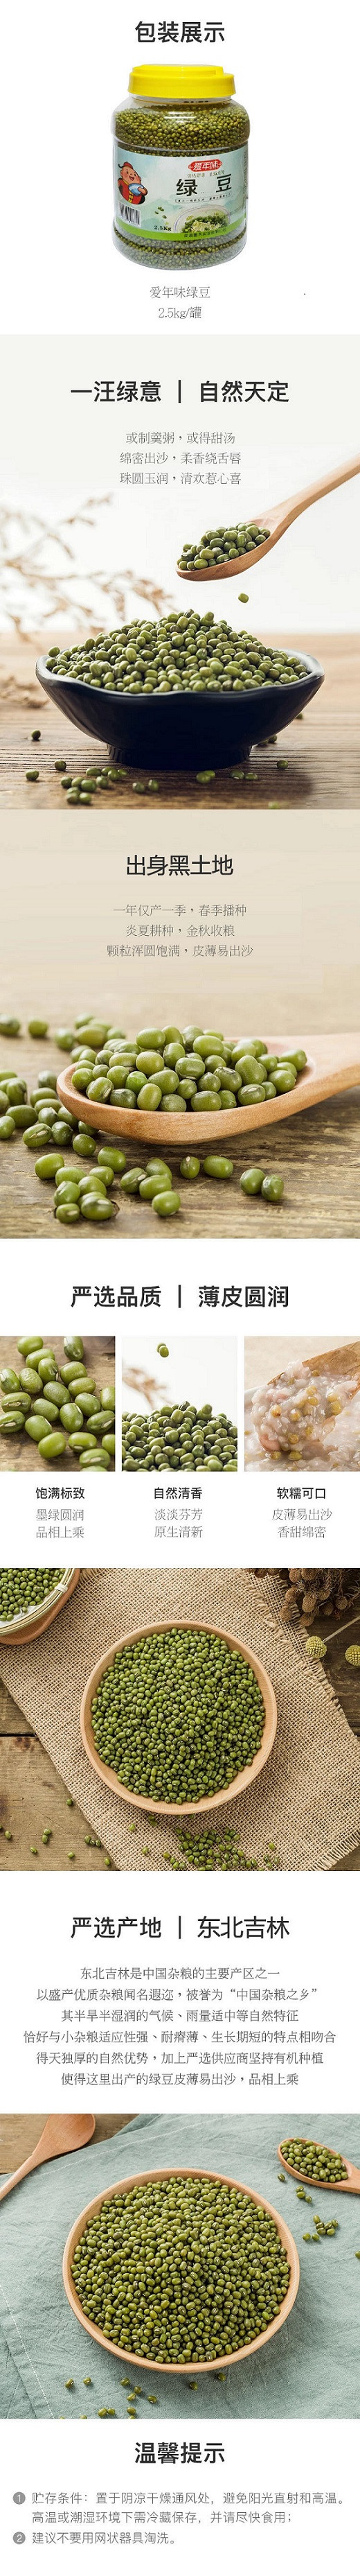 爱年味 【南昌振兴馆】绿豆2500g 五谷杂粮无添加